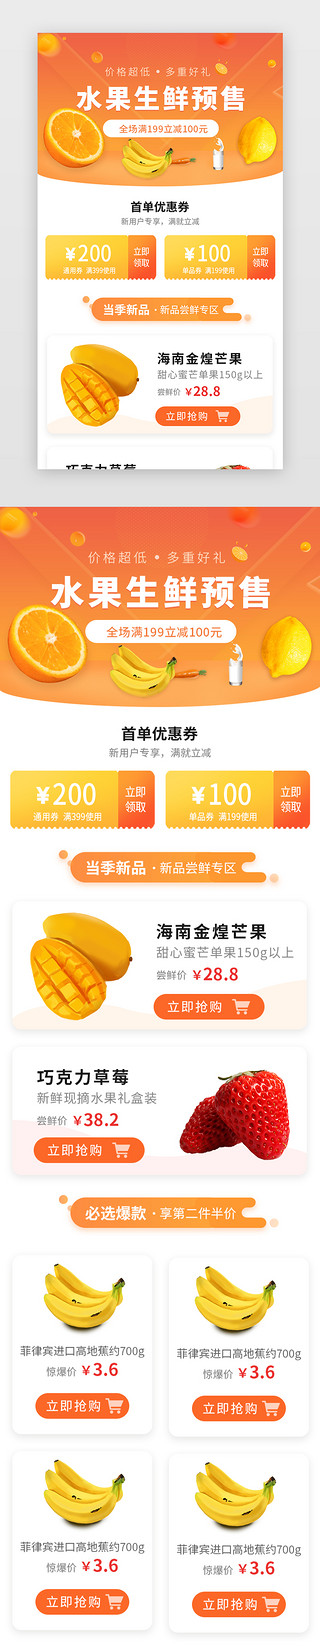 像海星的水果UI设计素材_橙色水果生鲜H5活动页